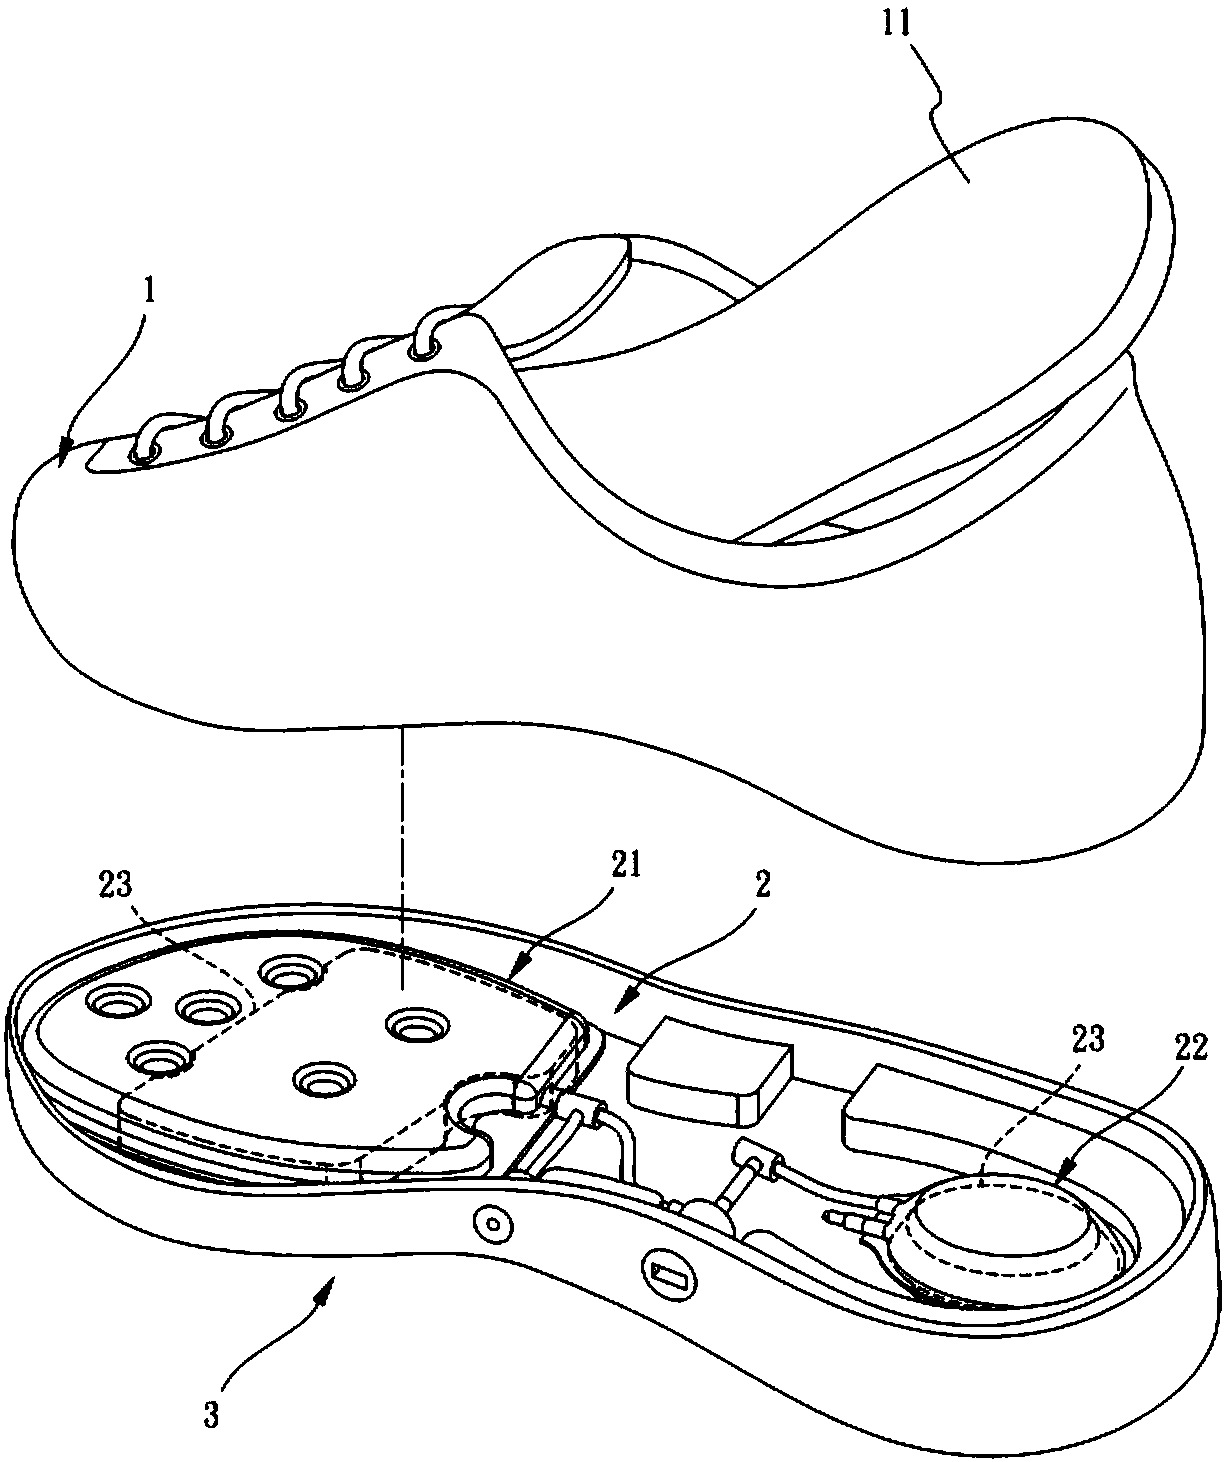 Air cushion shoe device